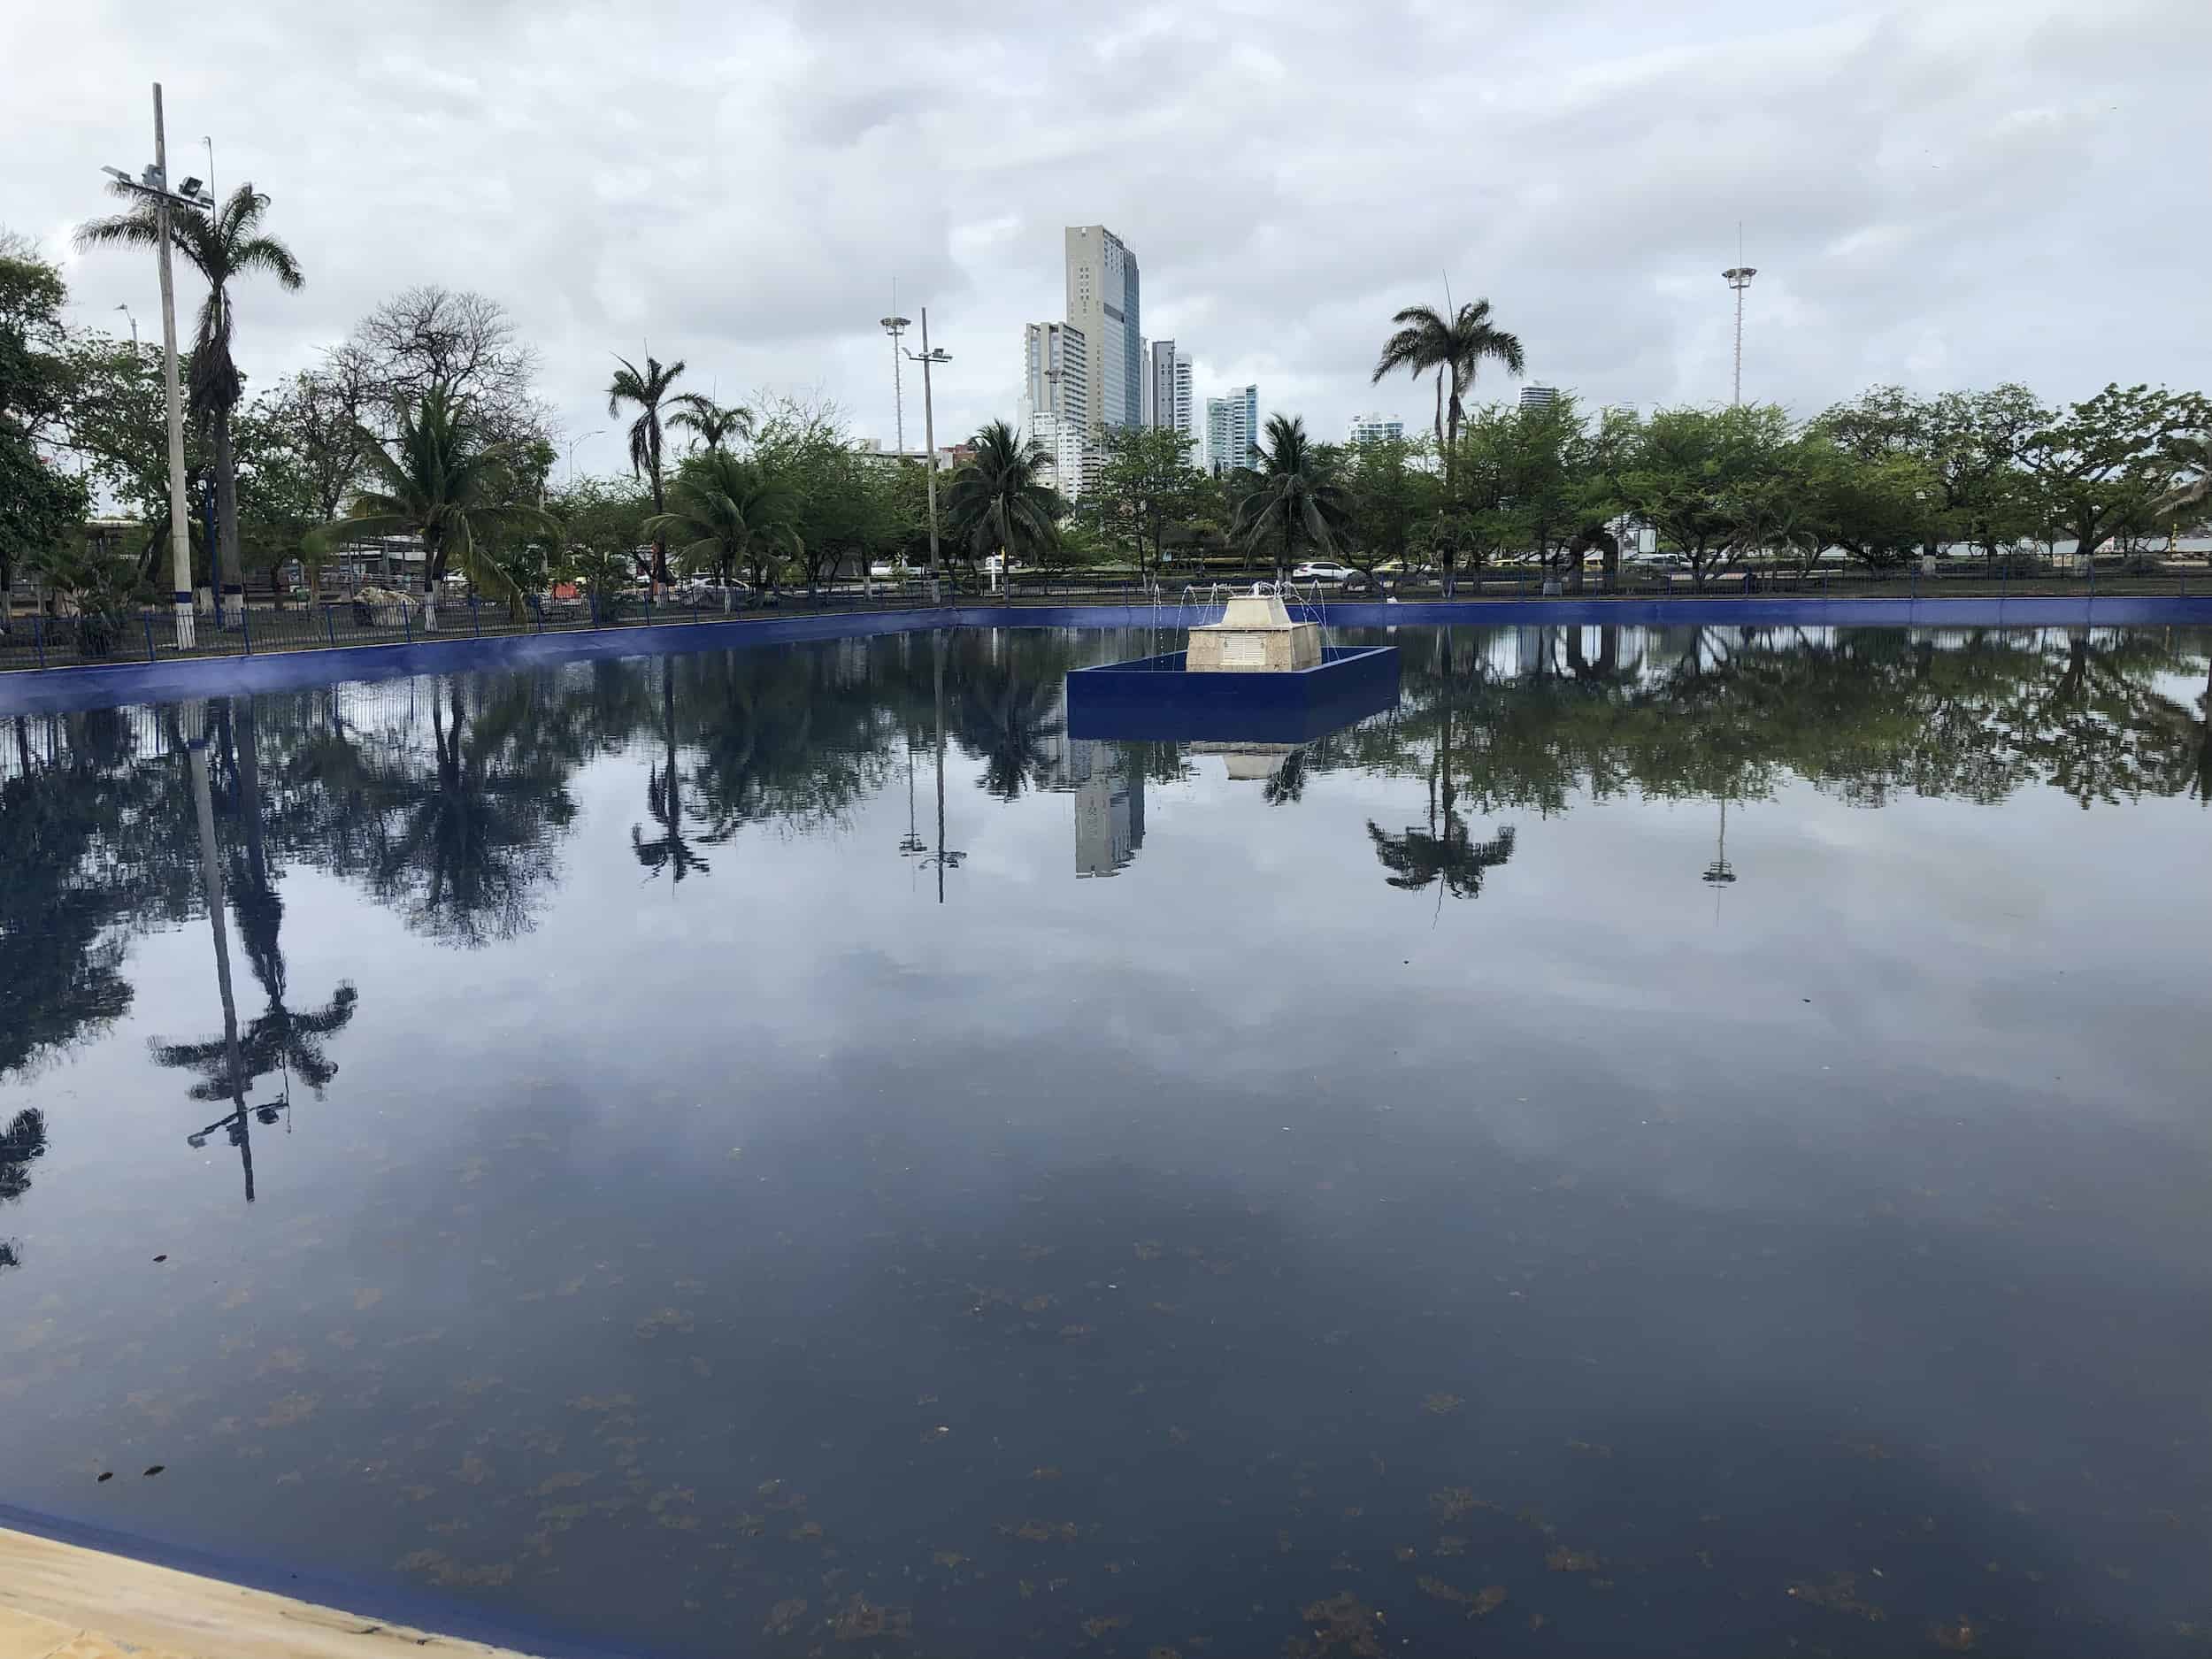 Reflecting pool at Parque de la Marina in Cartagena, Colombia